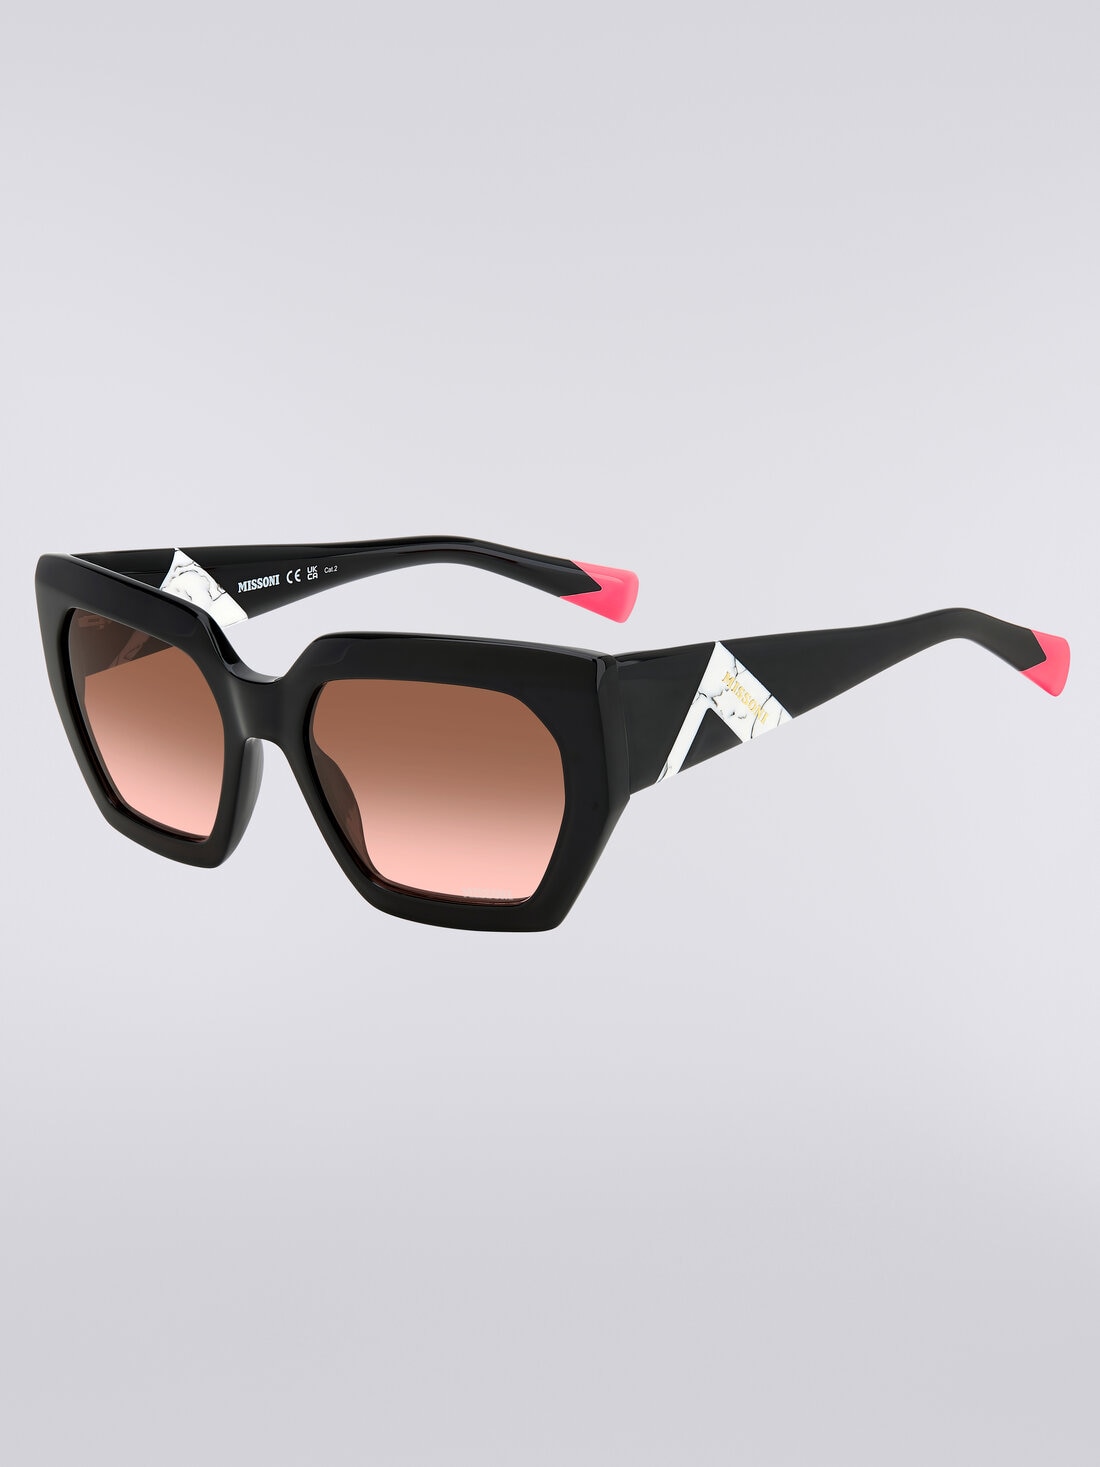 Sonnenbrille mit quadratischer Fassung, kontrastierendem Einsatz und Logo, Mehrfarbig  - 8053147194912 - 1